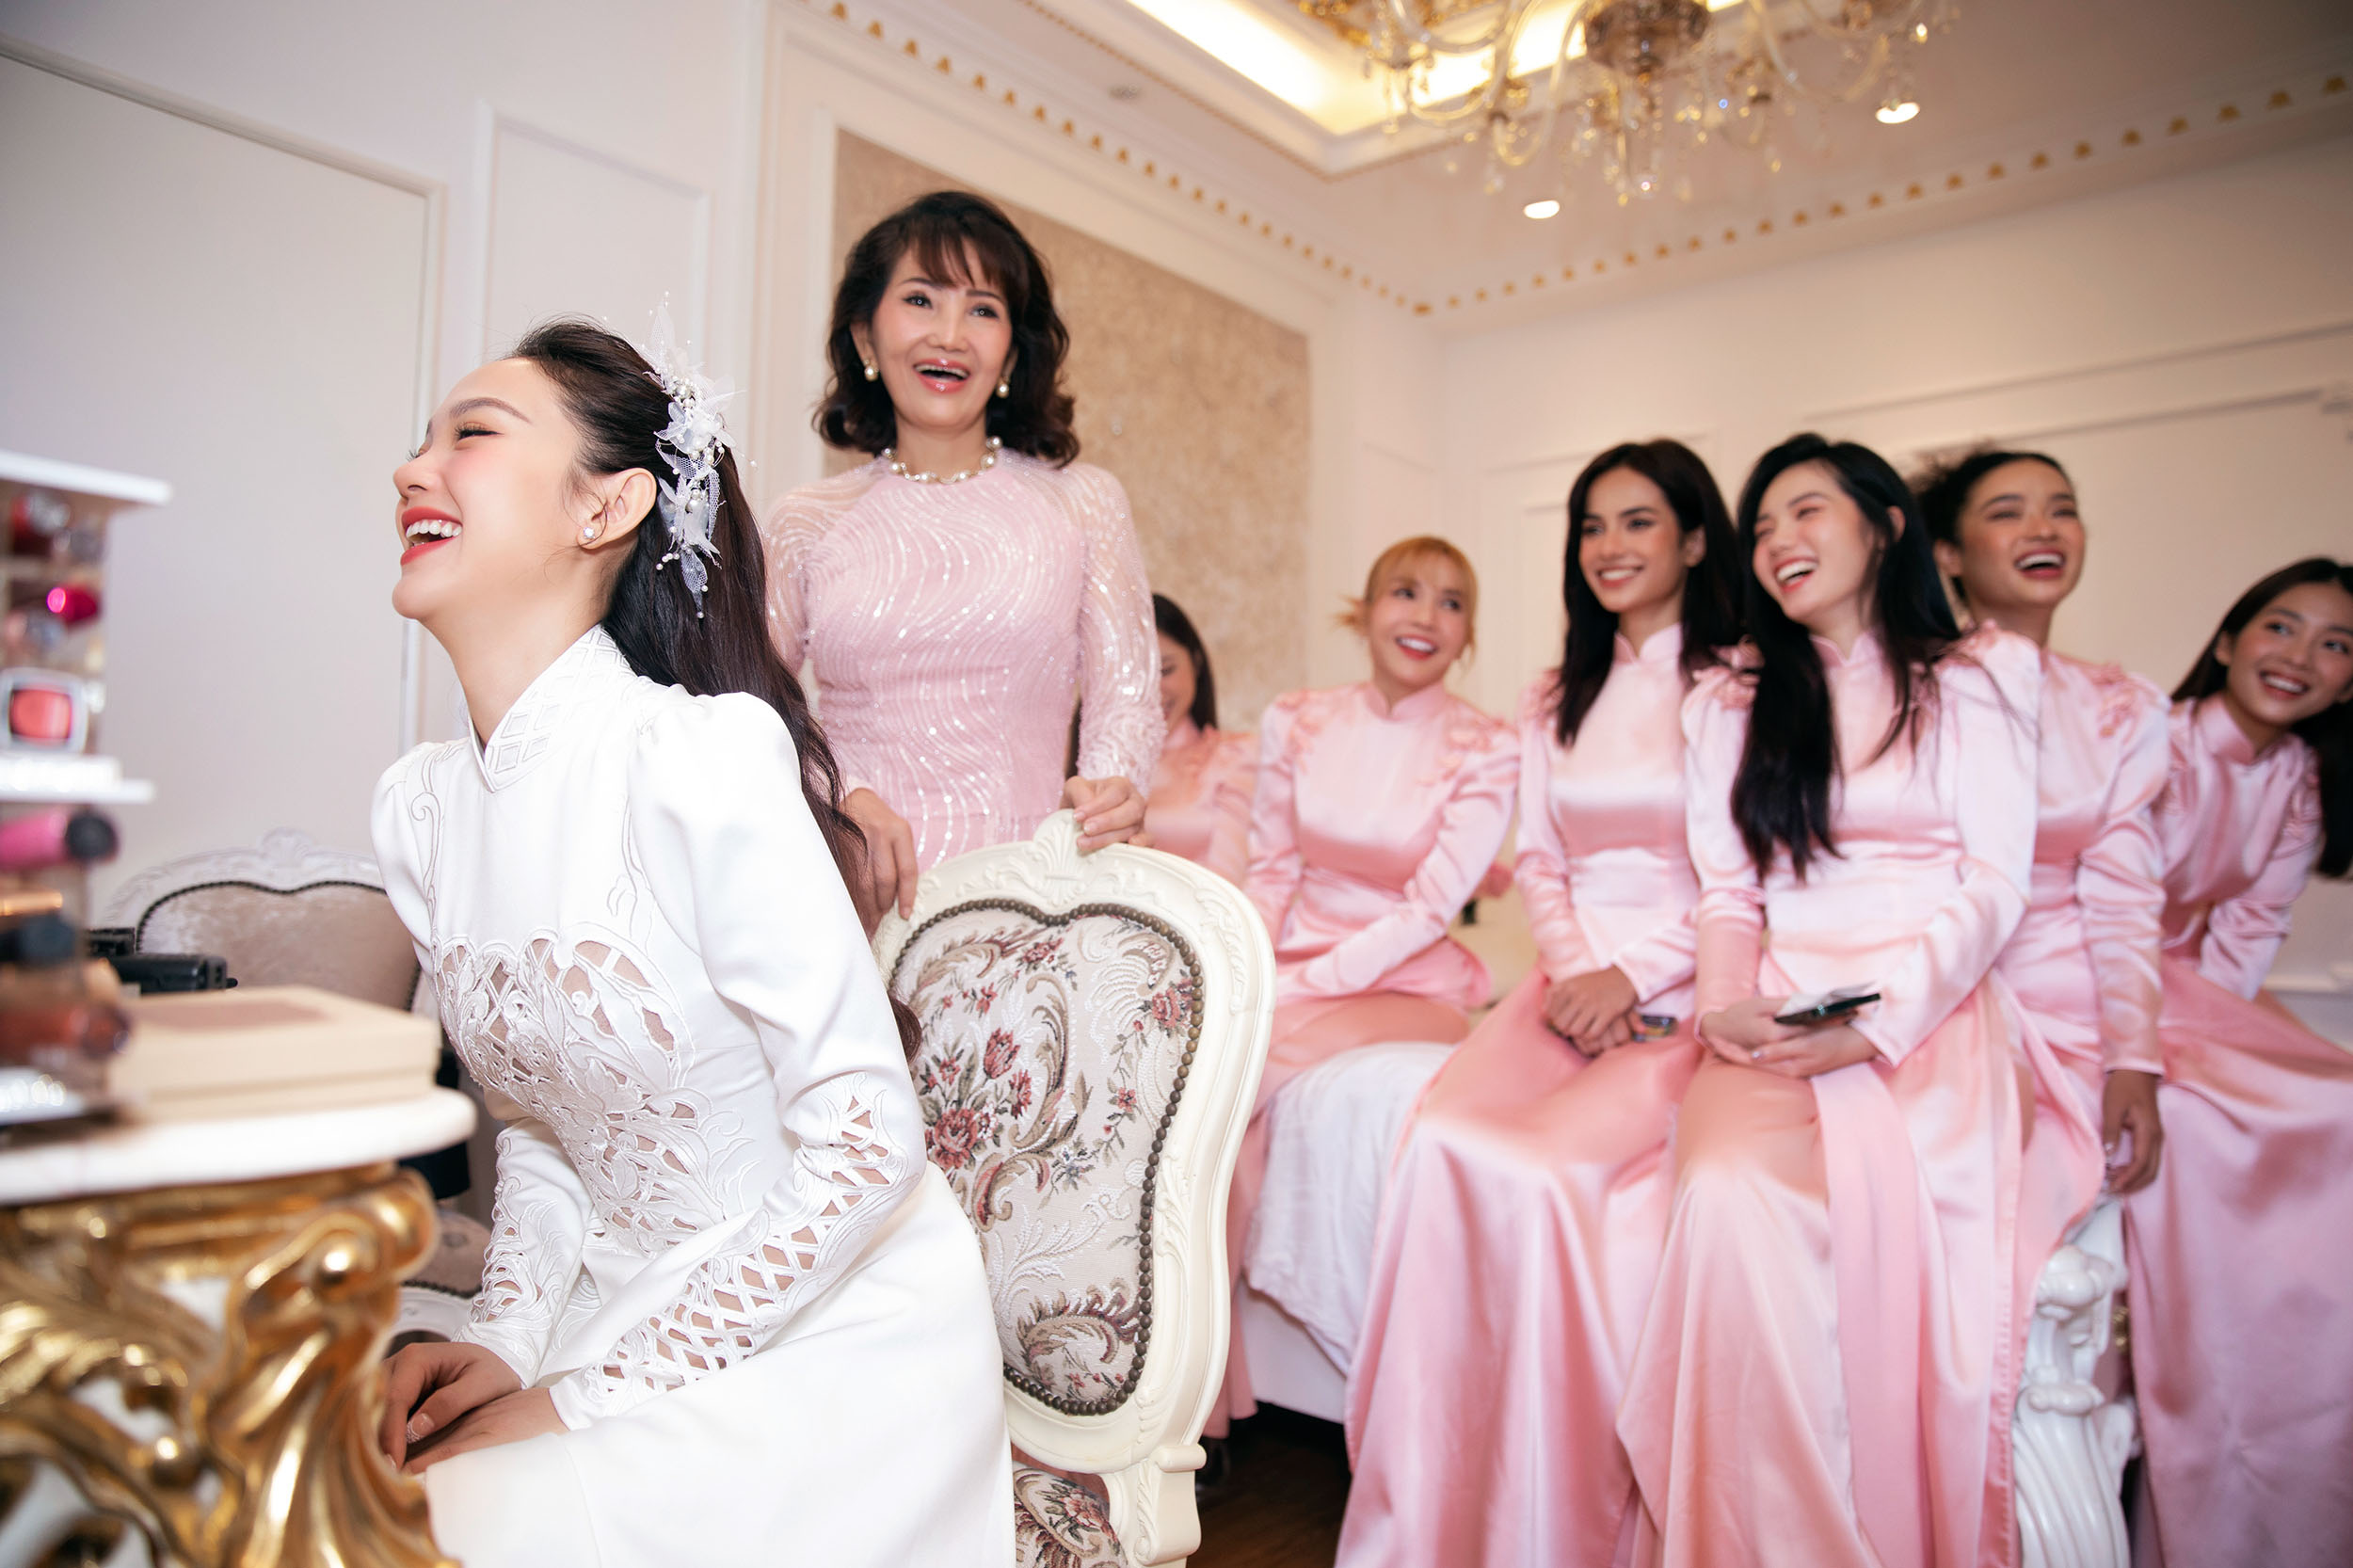 Lộ diện nhan sắc cô dâu Minh Hằng trong chiếc áo dài trắng tinh khôi